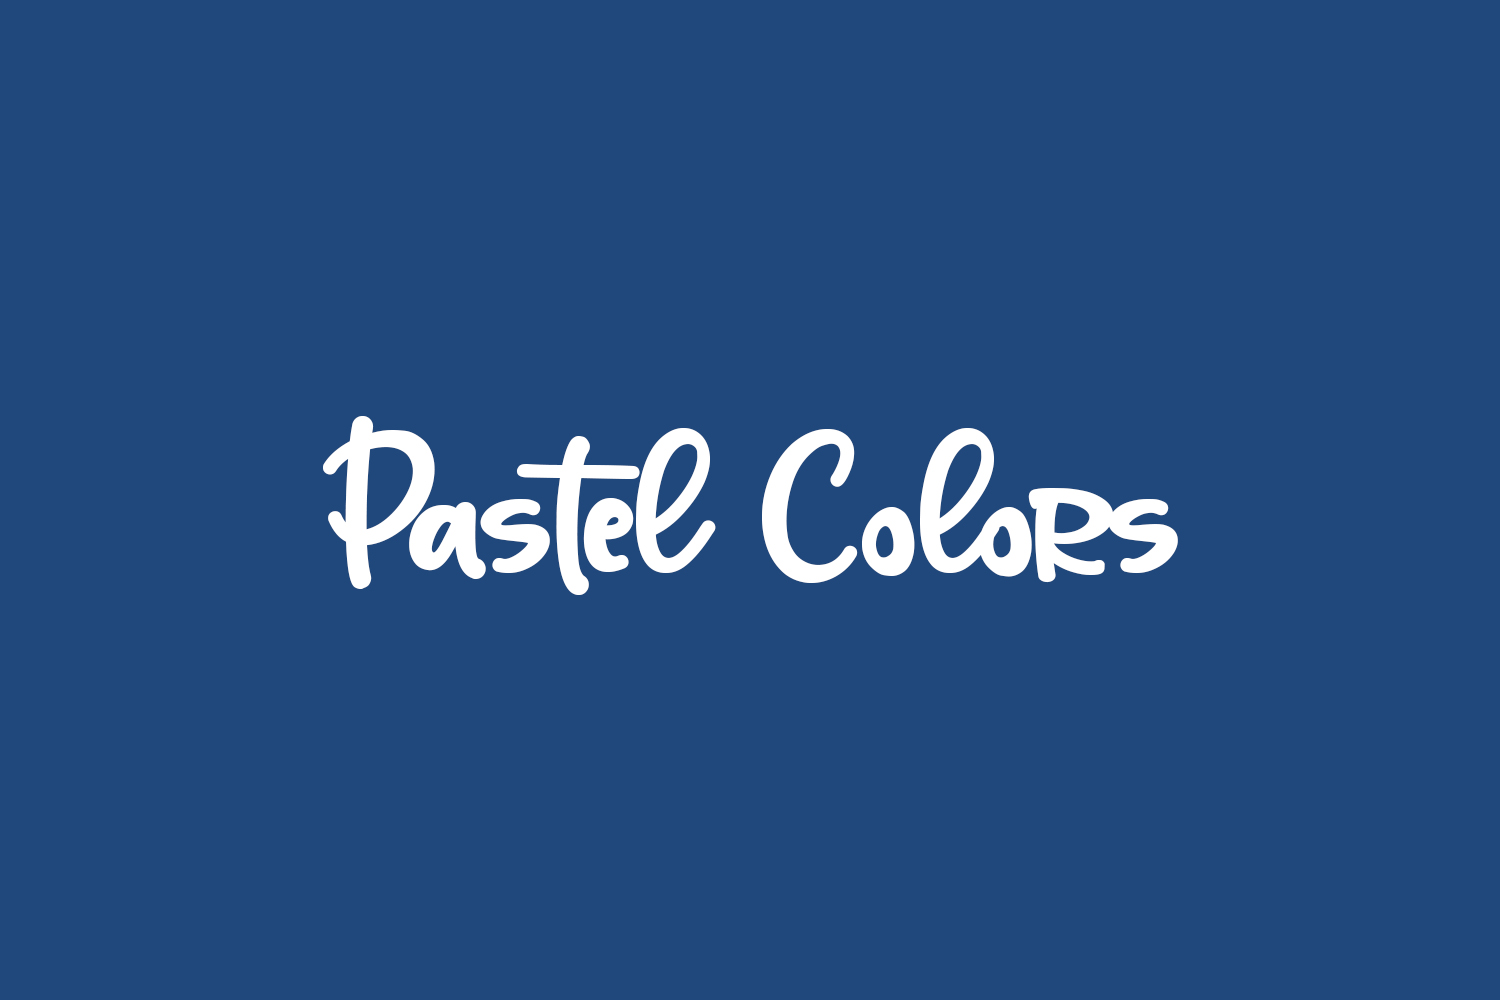 Pastel Colors Free Font